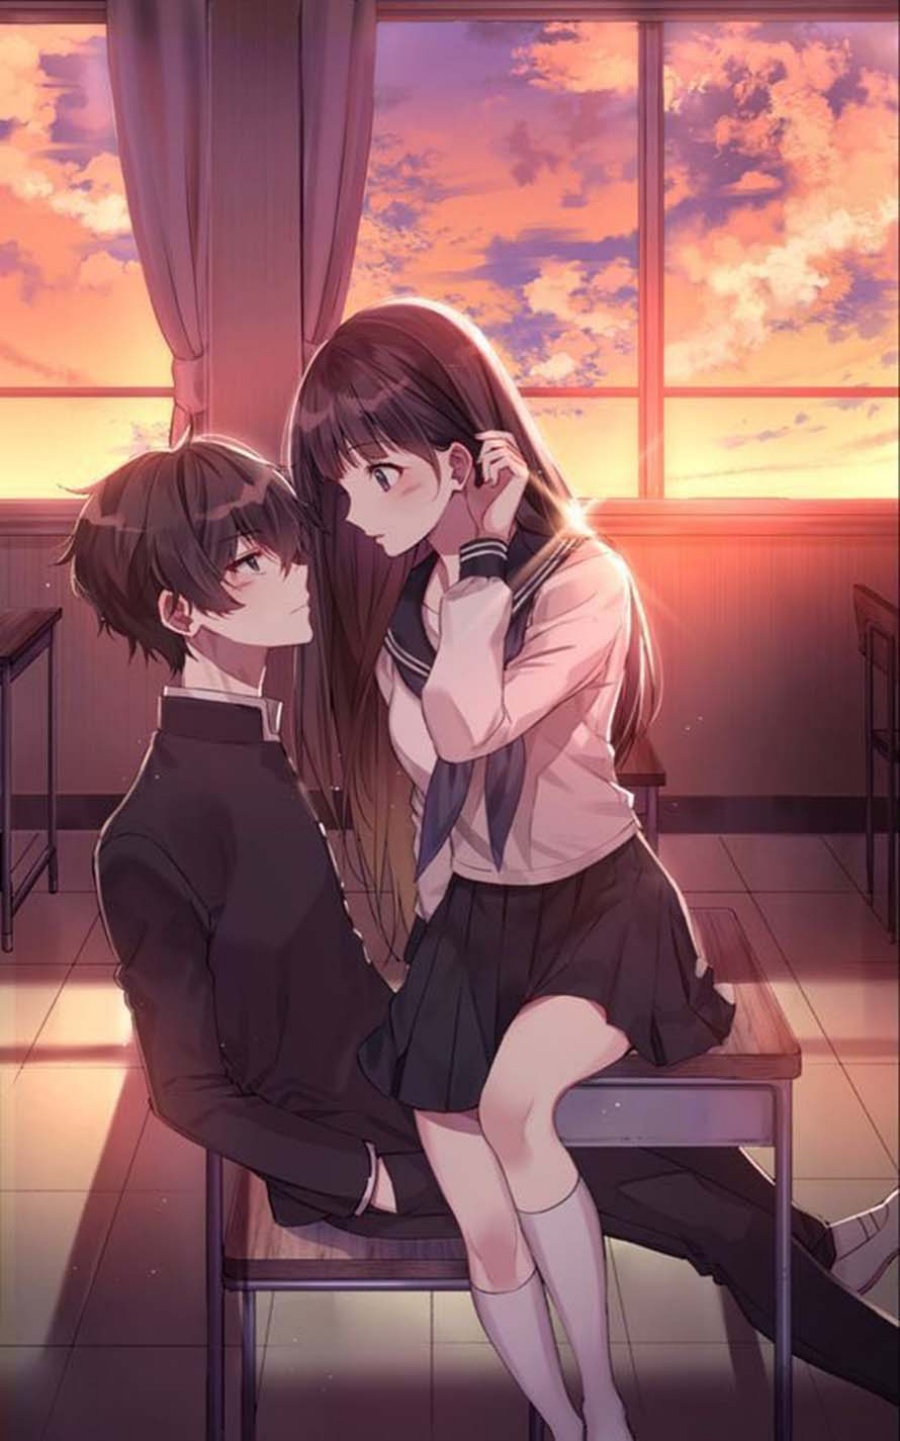 Hãy đến với hình ảnh anime cặp đôi yêu nhau, nơi mà tình yêu được tô điểm bởi những nét vẽ đậm chất Nhật Bản. Những câu chuyện tình lãng mạn và ngọt ngào chắc chắn sẽ khiến bạn cảm thấy xúc động đến rơi nước mắt.